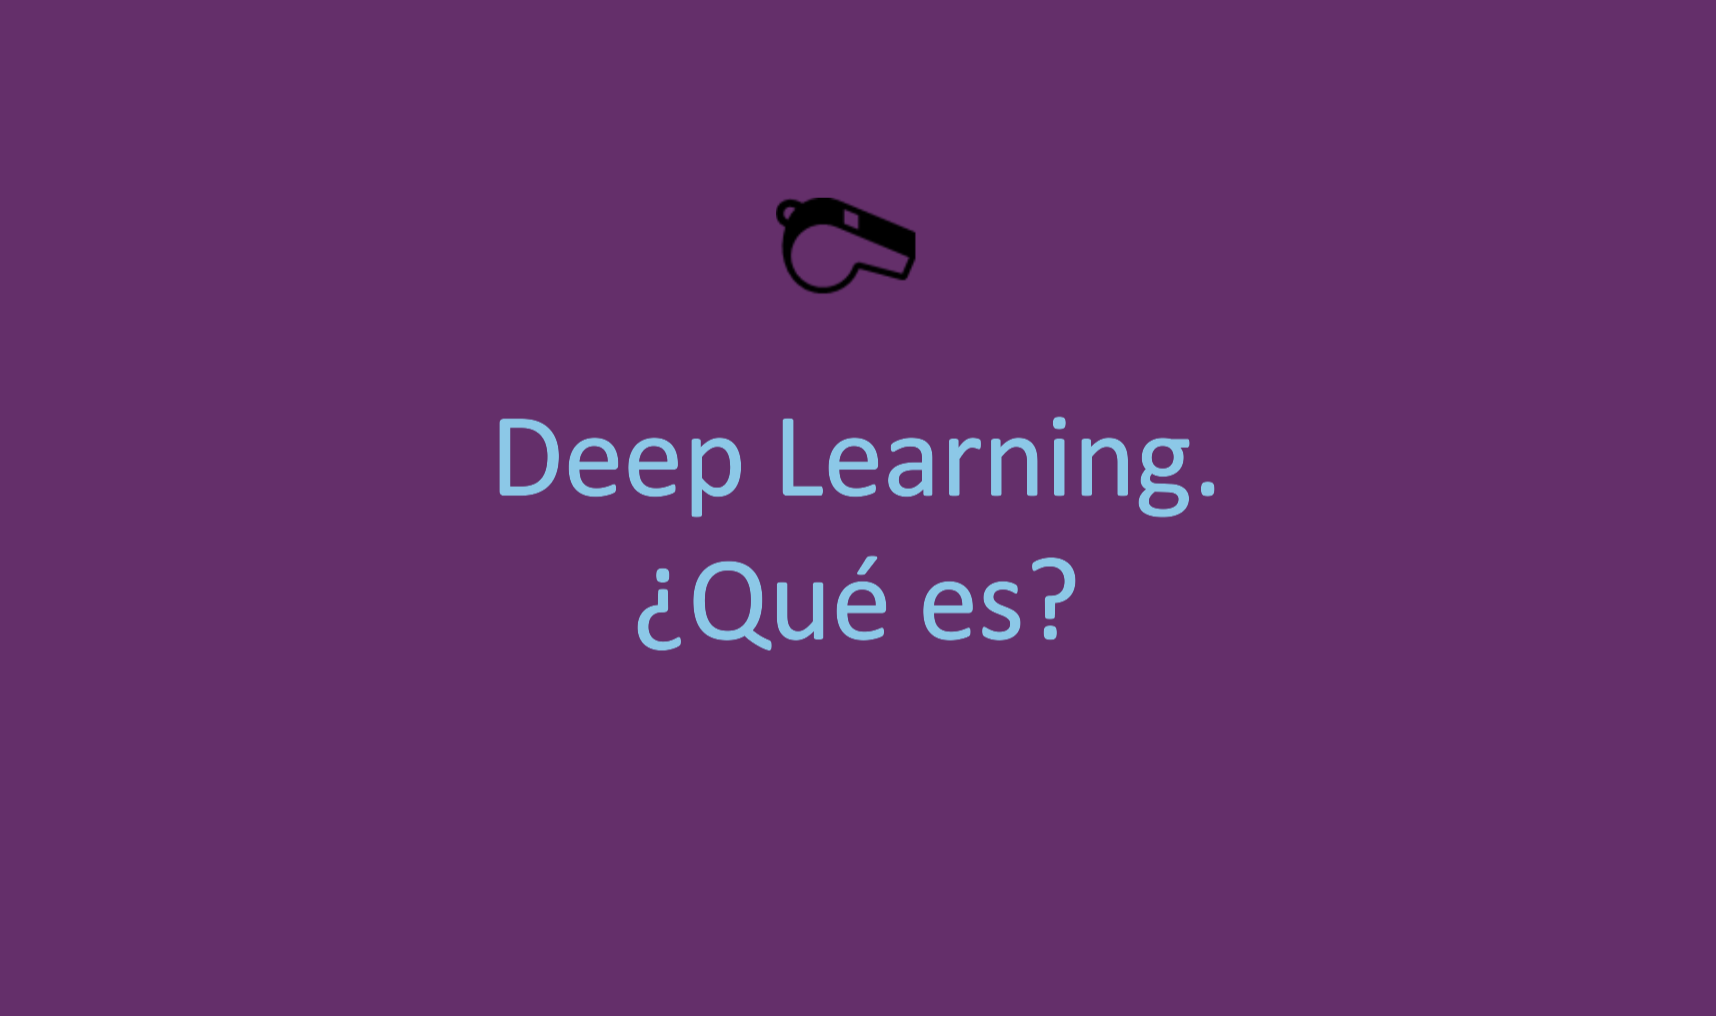 Deep Learning. ¿Qué es?